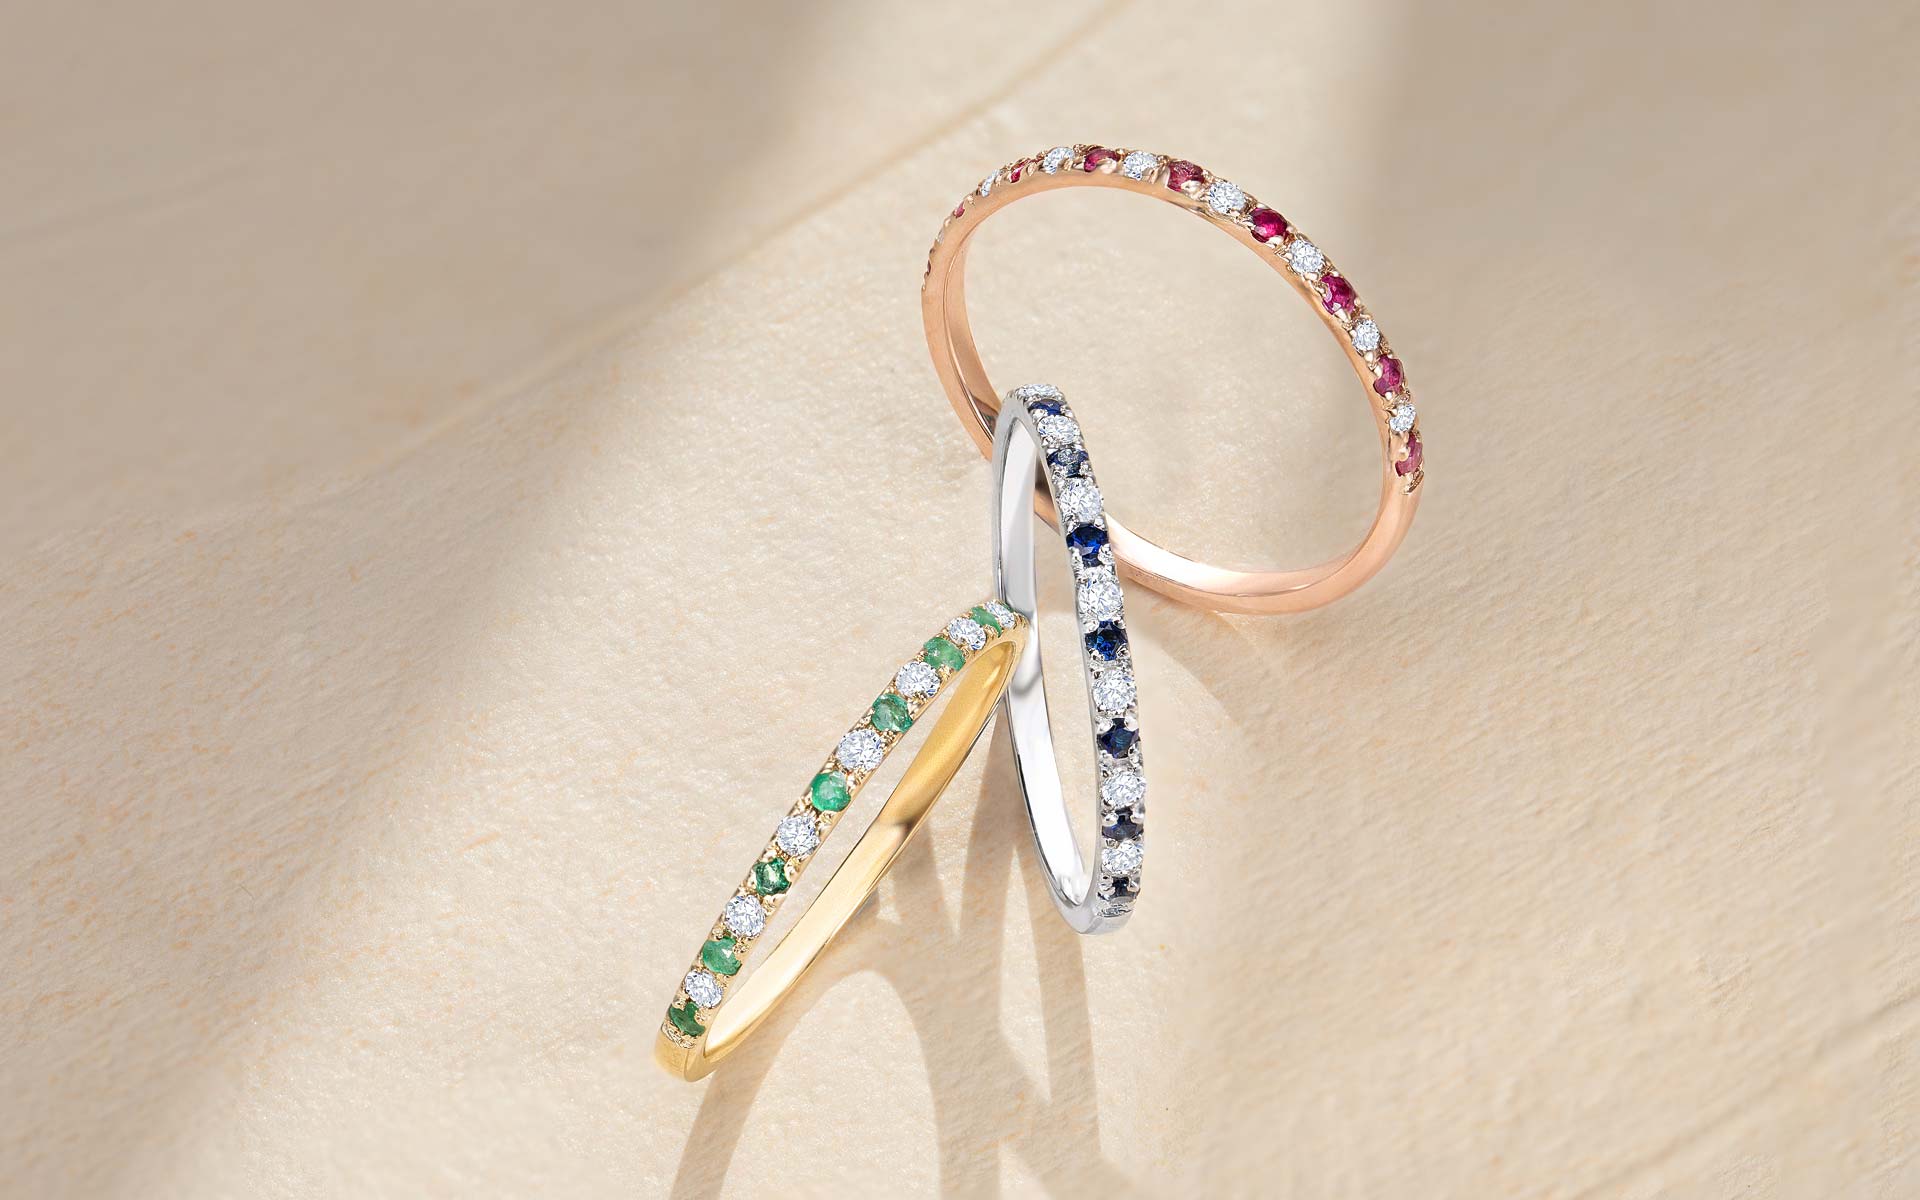 Tipos de sortijas para mujer modelo Milett de esmeraldas, rubíes y zafiros con diamantes